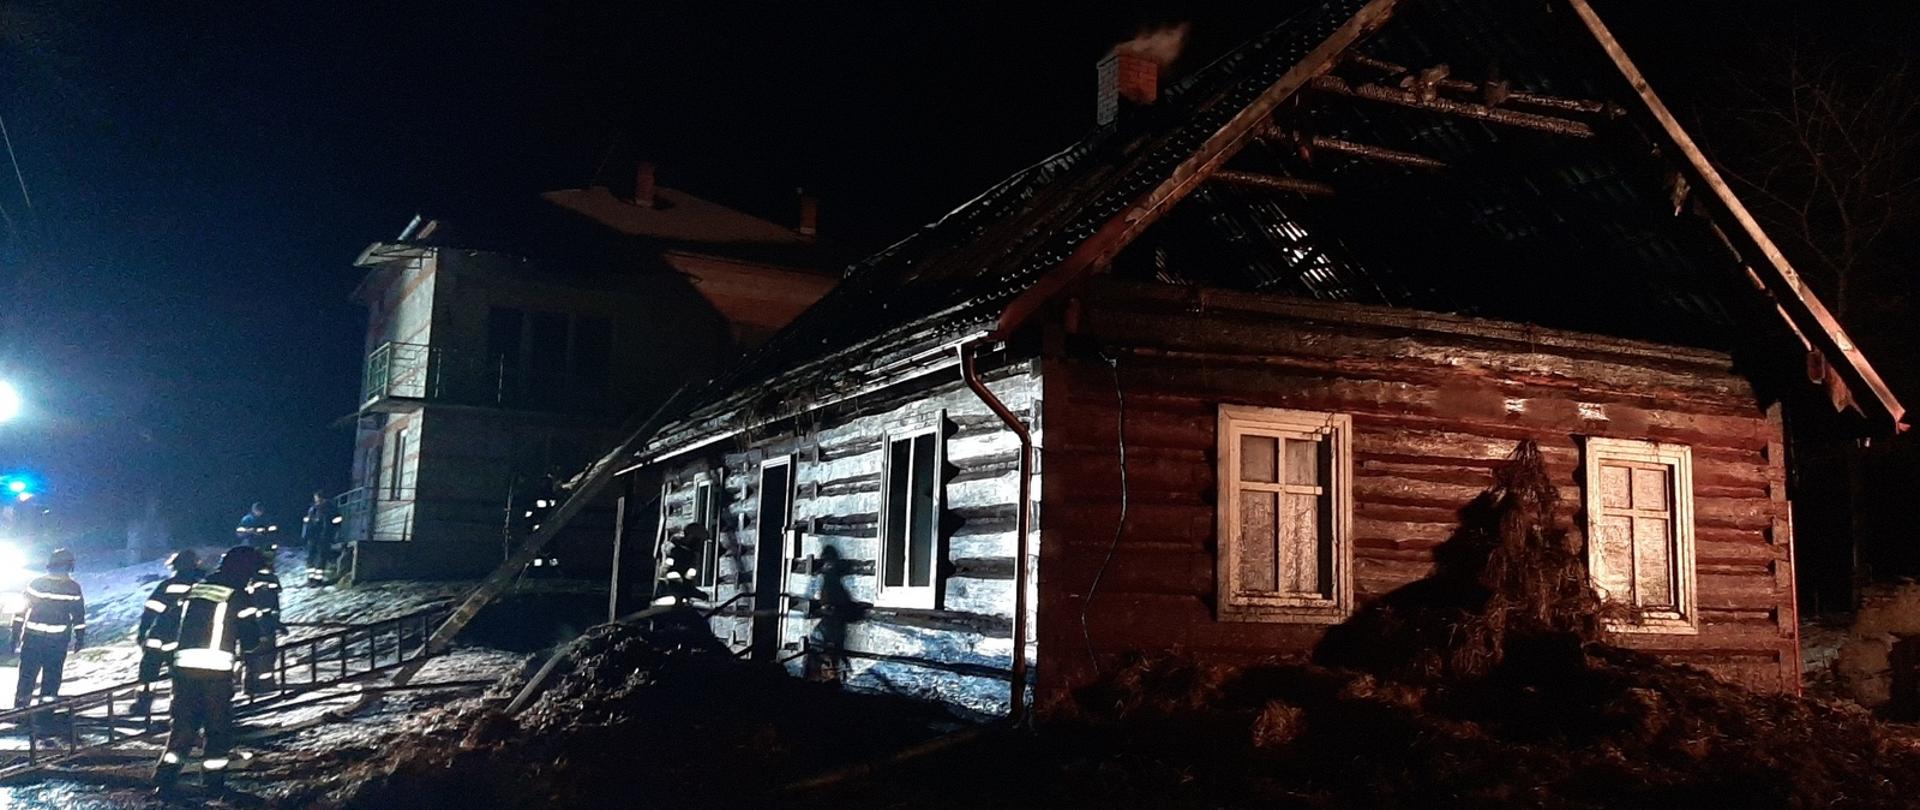 Zdjęcie zrobione na zewnątrz w nocy. Na pierwszym planie drewniany dom, o który oparta jest drabina. Po lewej stronie strażacy prowadzący działania ratownicze. W tle stoi murowany dom.